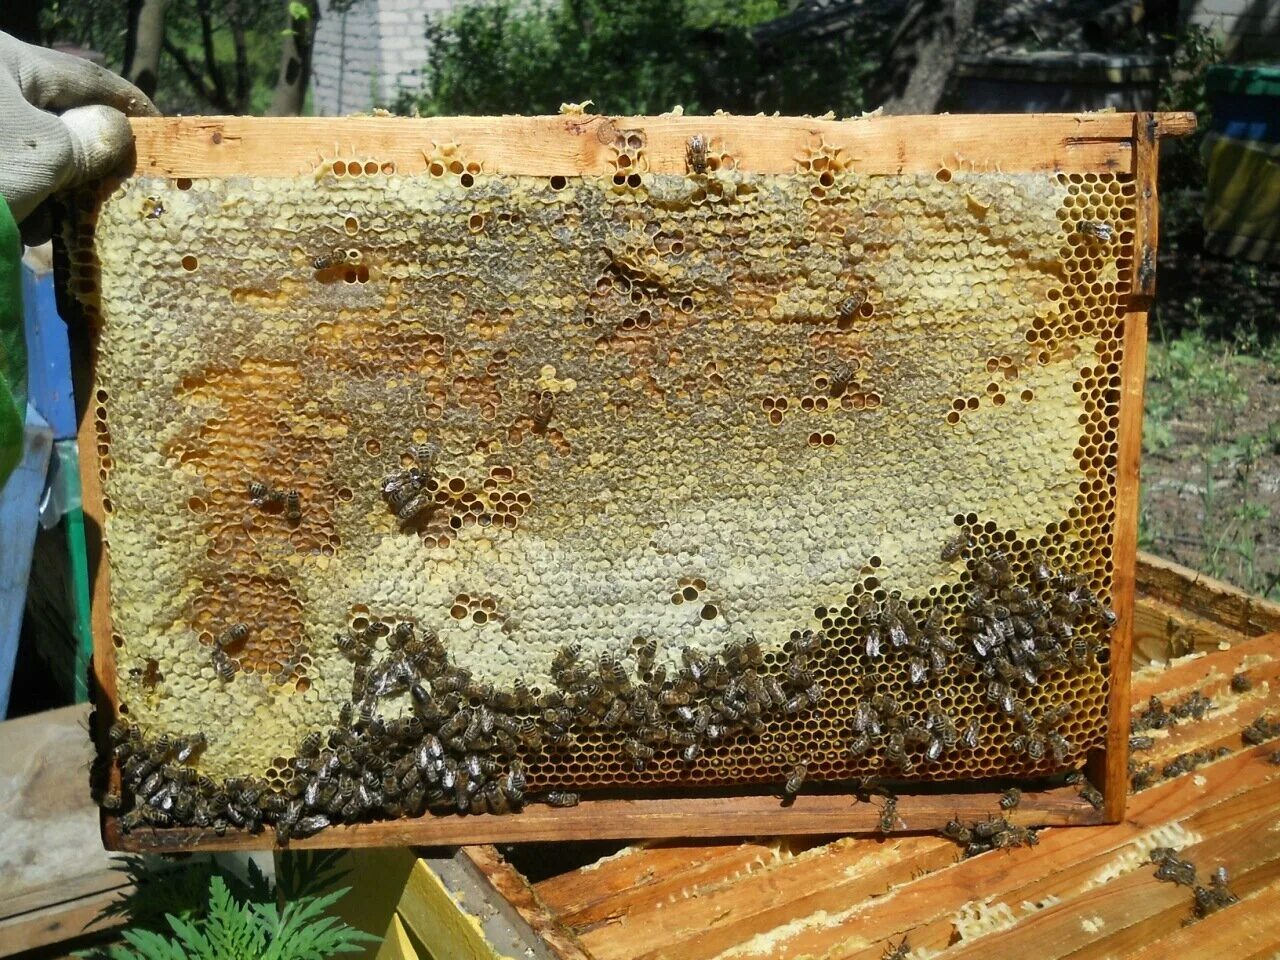 Купить пчелиные рамки. Пчелиная рамка. Рамки для пчел. Необычные рамки для пчел. Нестандартные рамки для пчел.